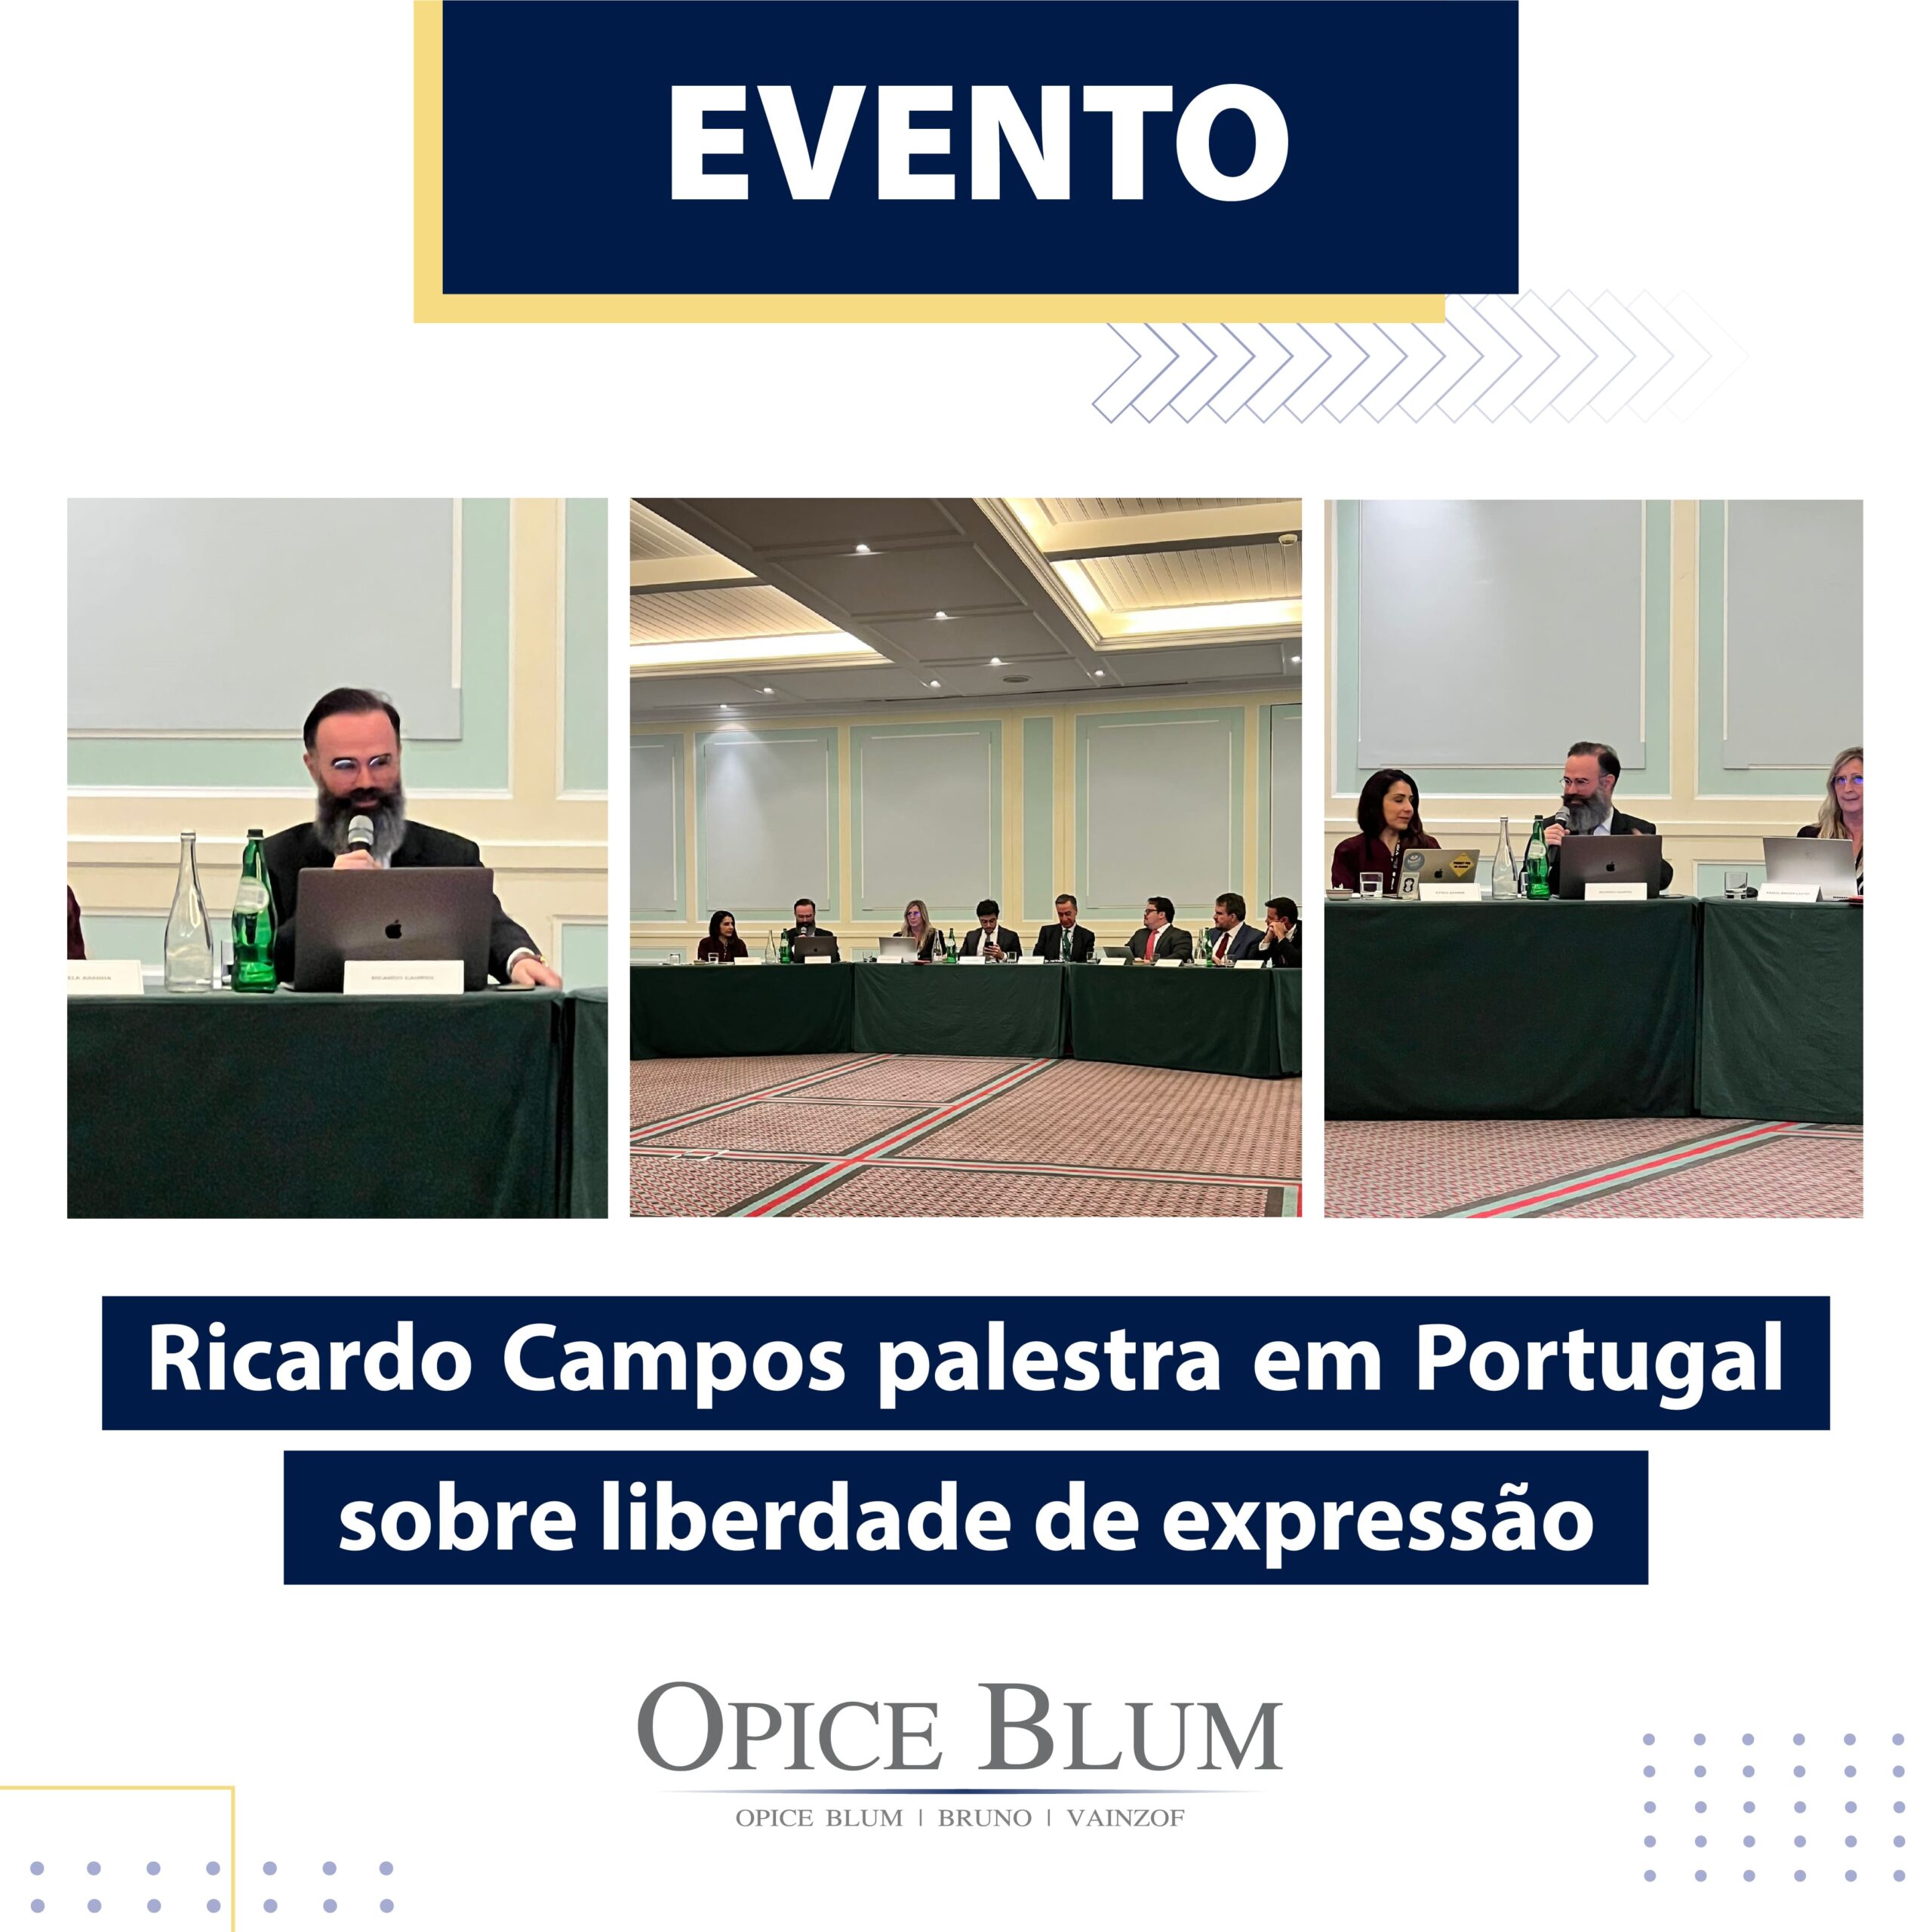 Ricardo Campos palestra em Portugal sobre liberdade de expressão